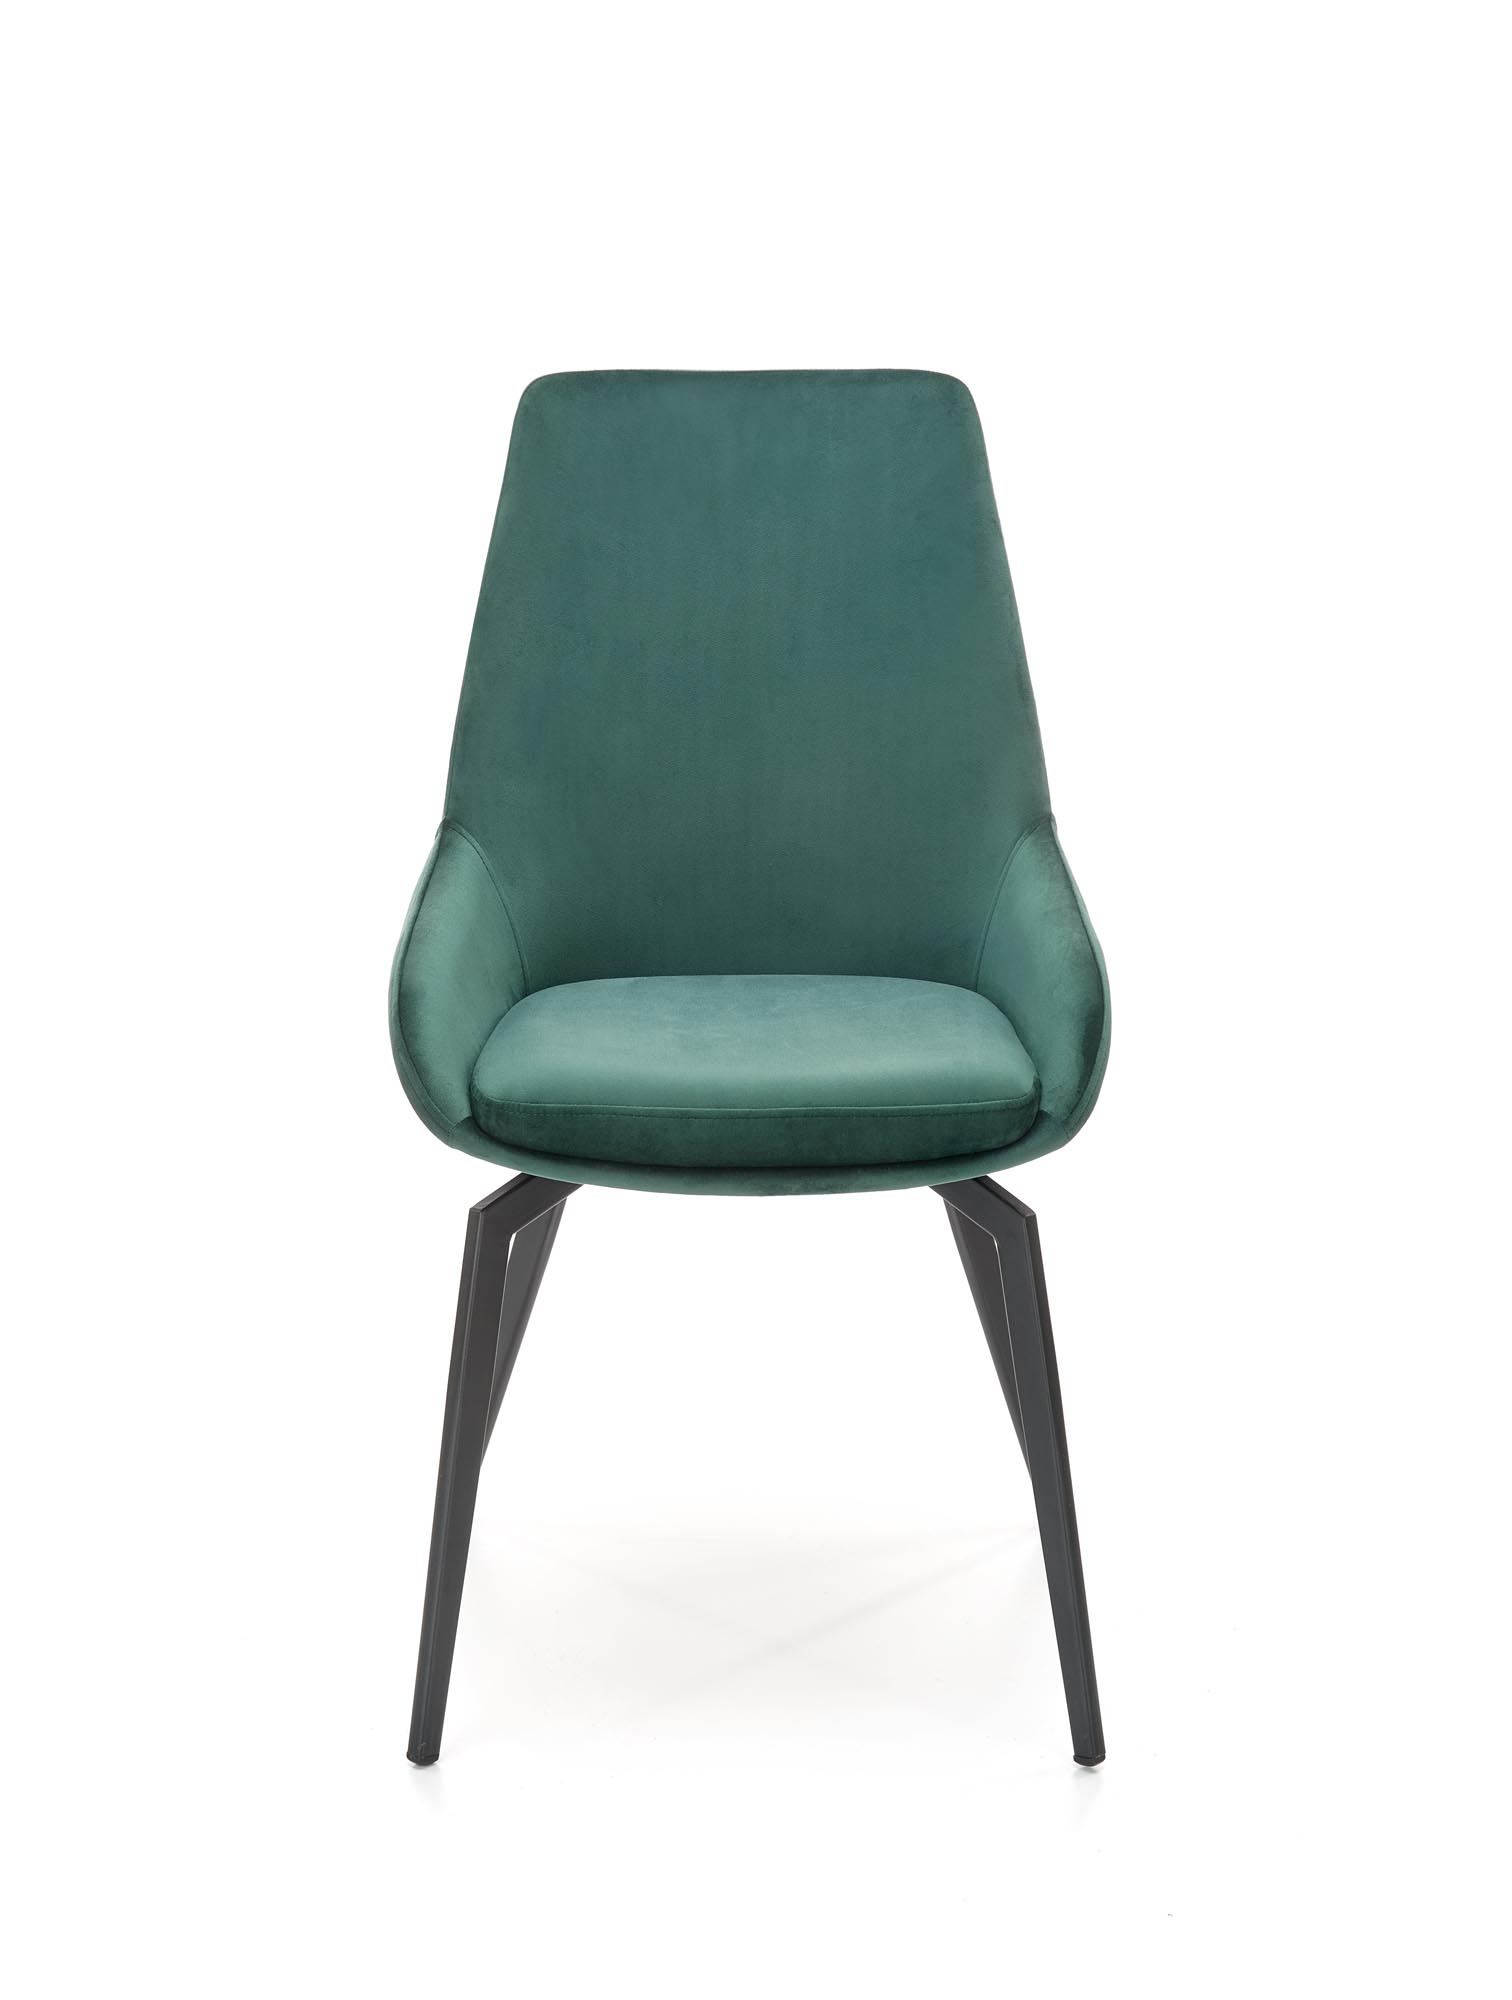 K479 krzesło ciemny zielony k479 krzesło ciemny zielony